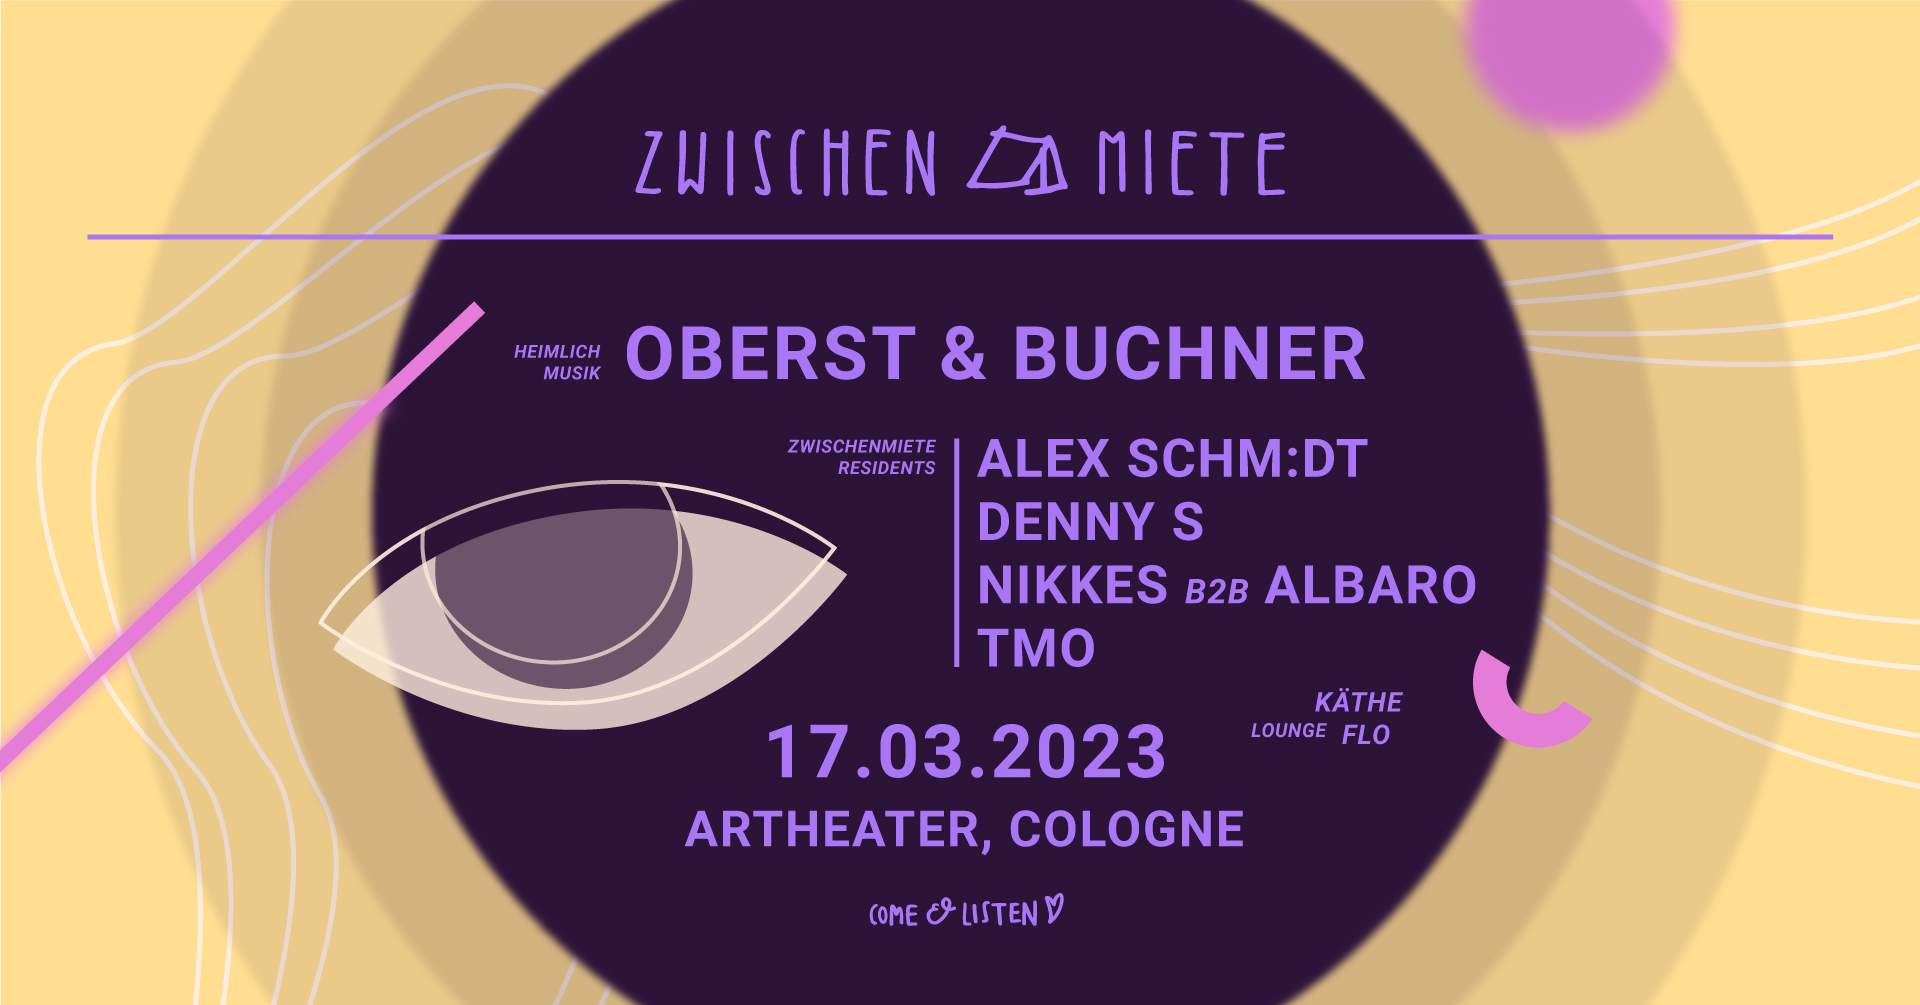 Zwischenmiete Club Edition with Oberst & Buchner - フライヤー裏